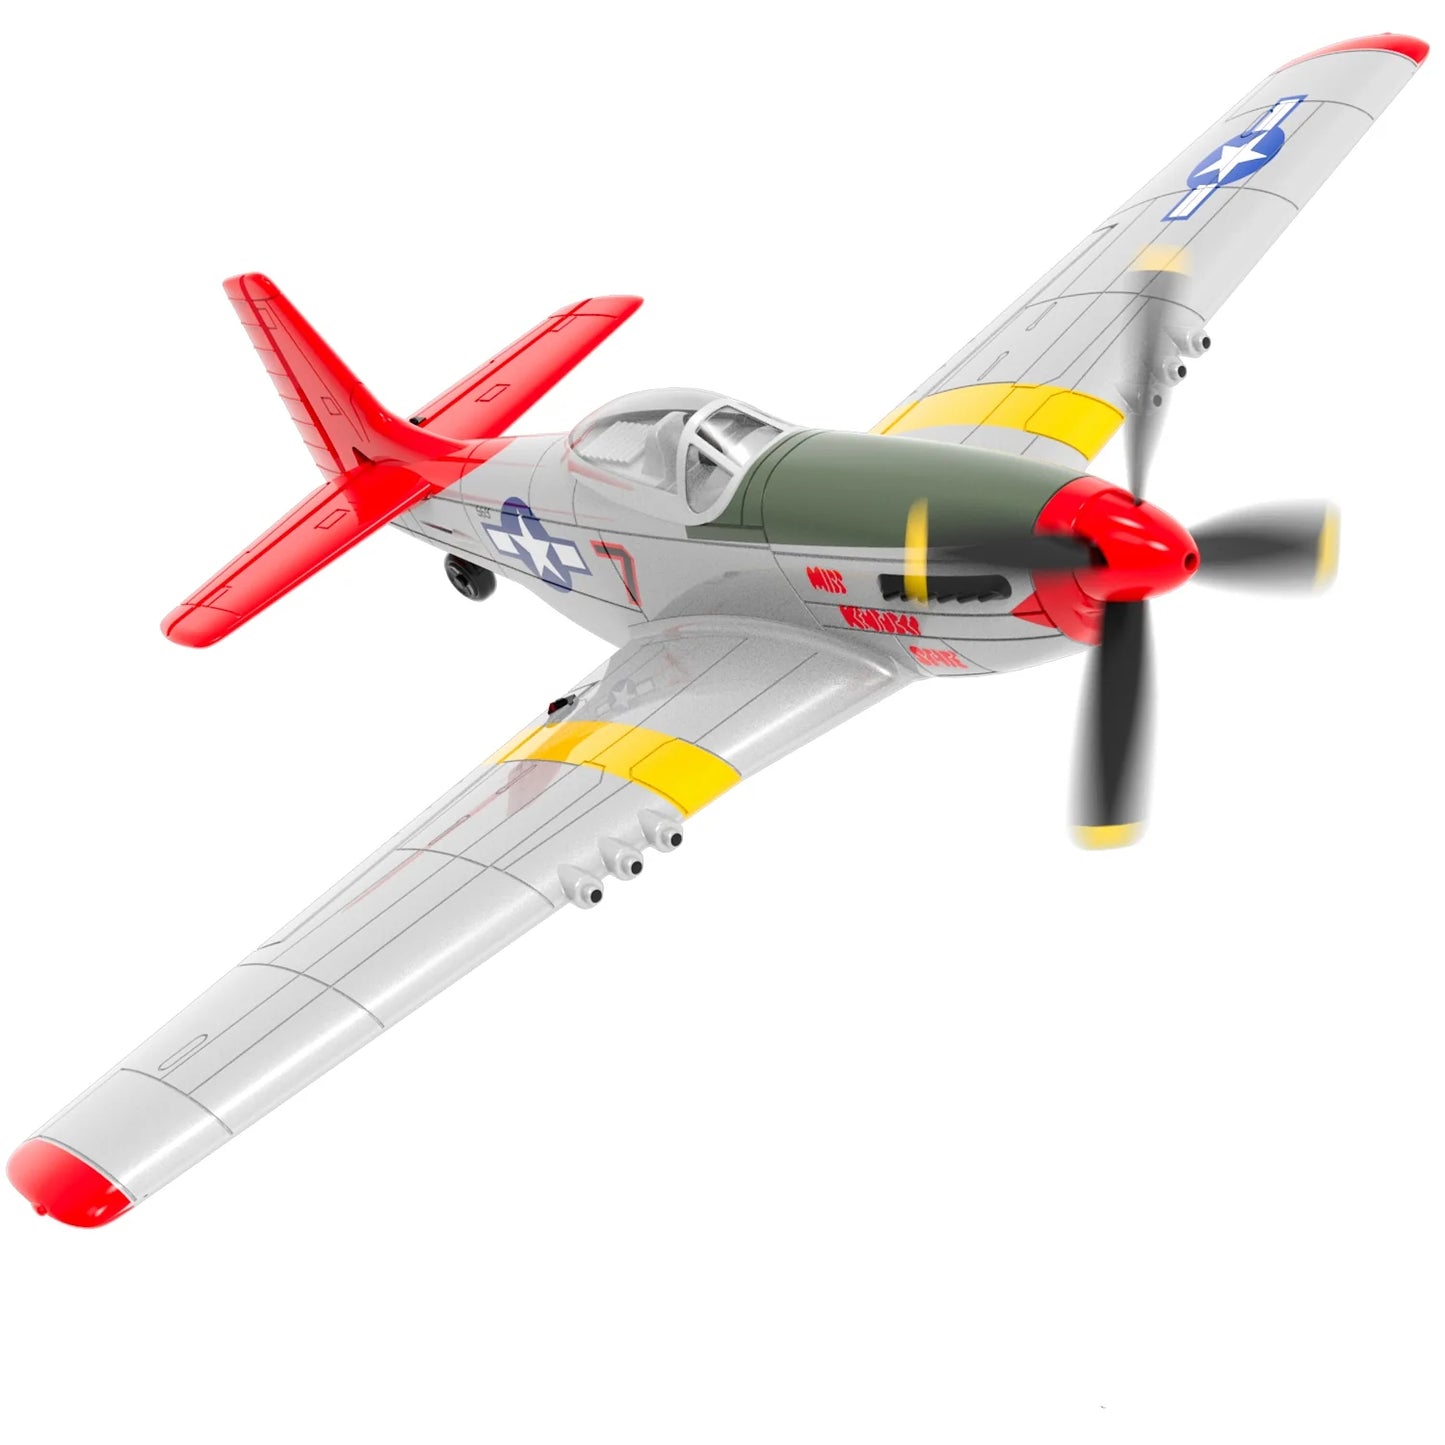 F4U Corsair RC प्लेन - EPP 761-8 400mm विंगस्पैन RC एयरप्लेन वन-की एरोबैटिक RTF रिमोट कंट्रोल एयरक्राफ्ट खिलौने बच्चों, वयस्कों के लिए